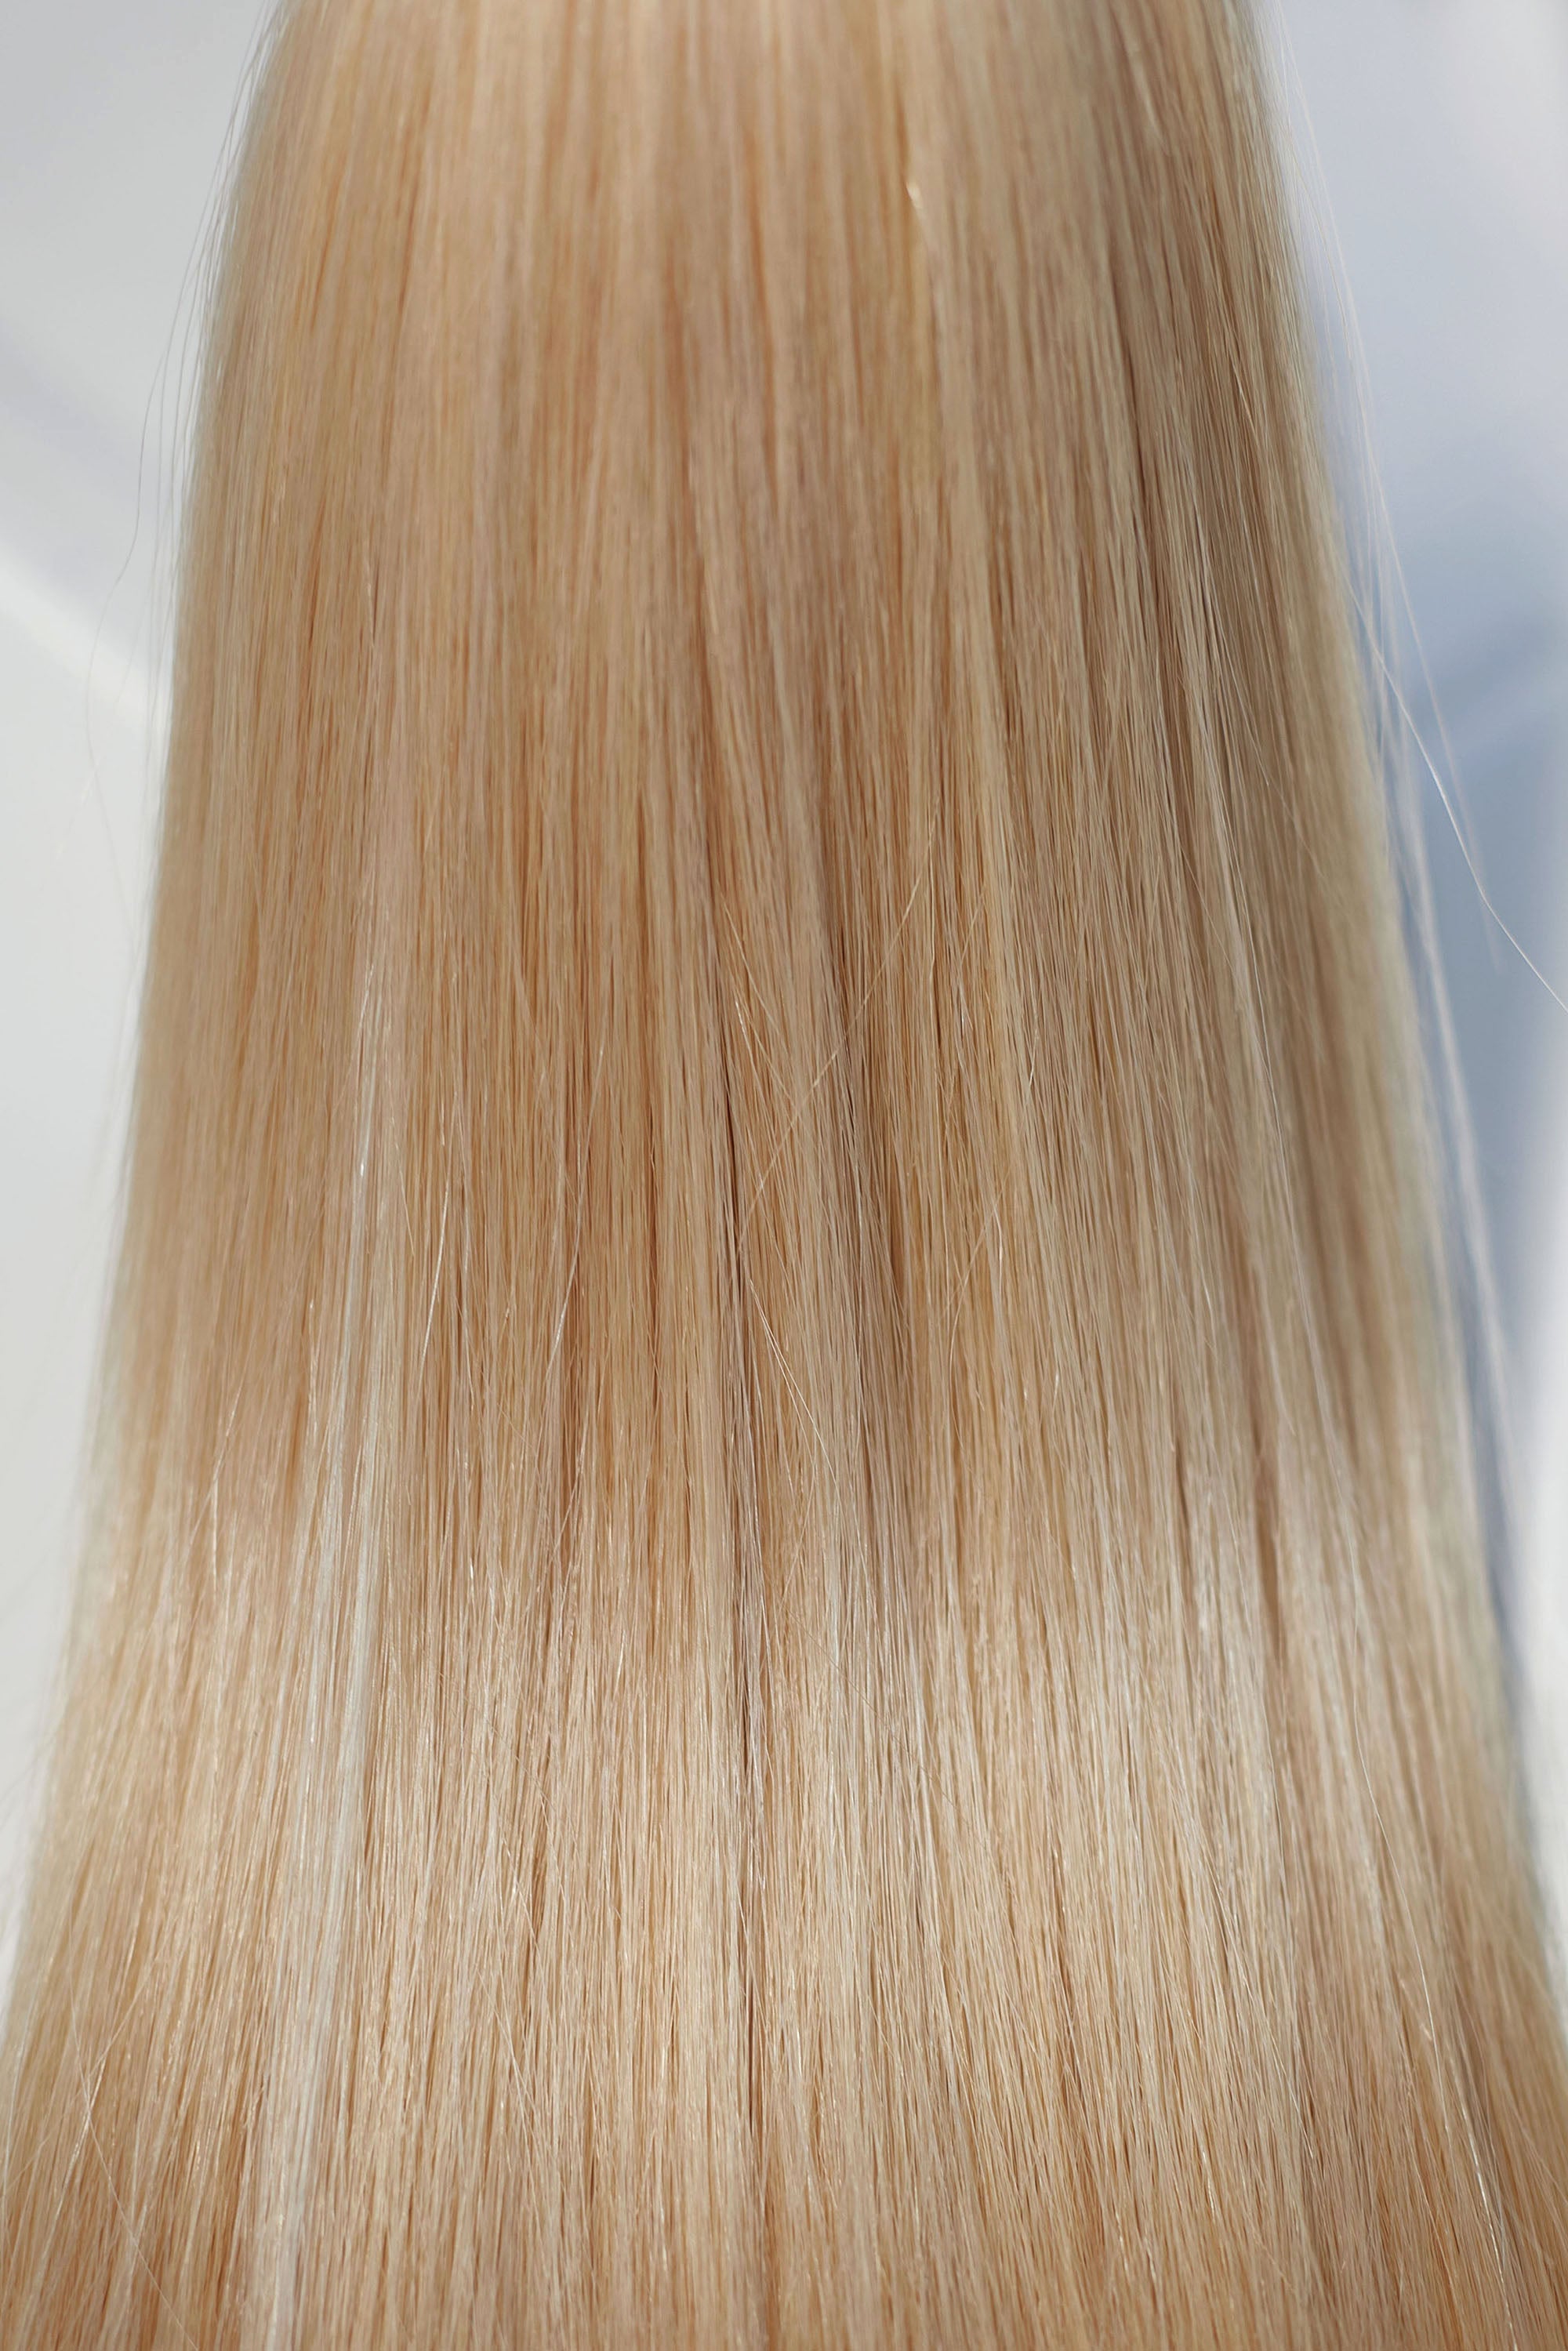 Behair professional Keratin Tip "Premium" 24" (60cm) Natural Straight Light Gold Blond #24 - 25g (Standart - 0.7g each pcs) hair extensions